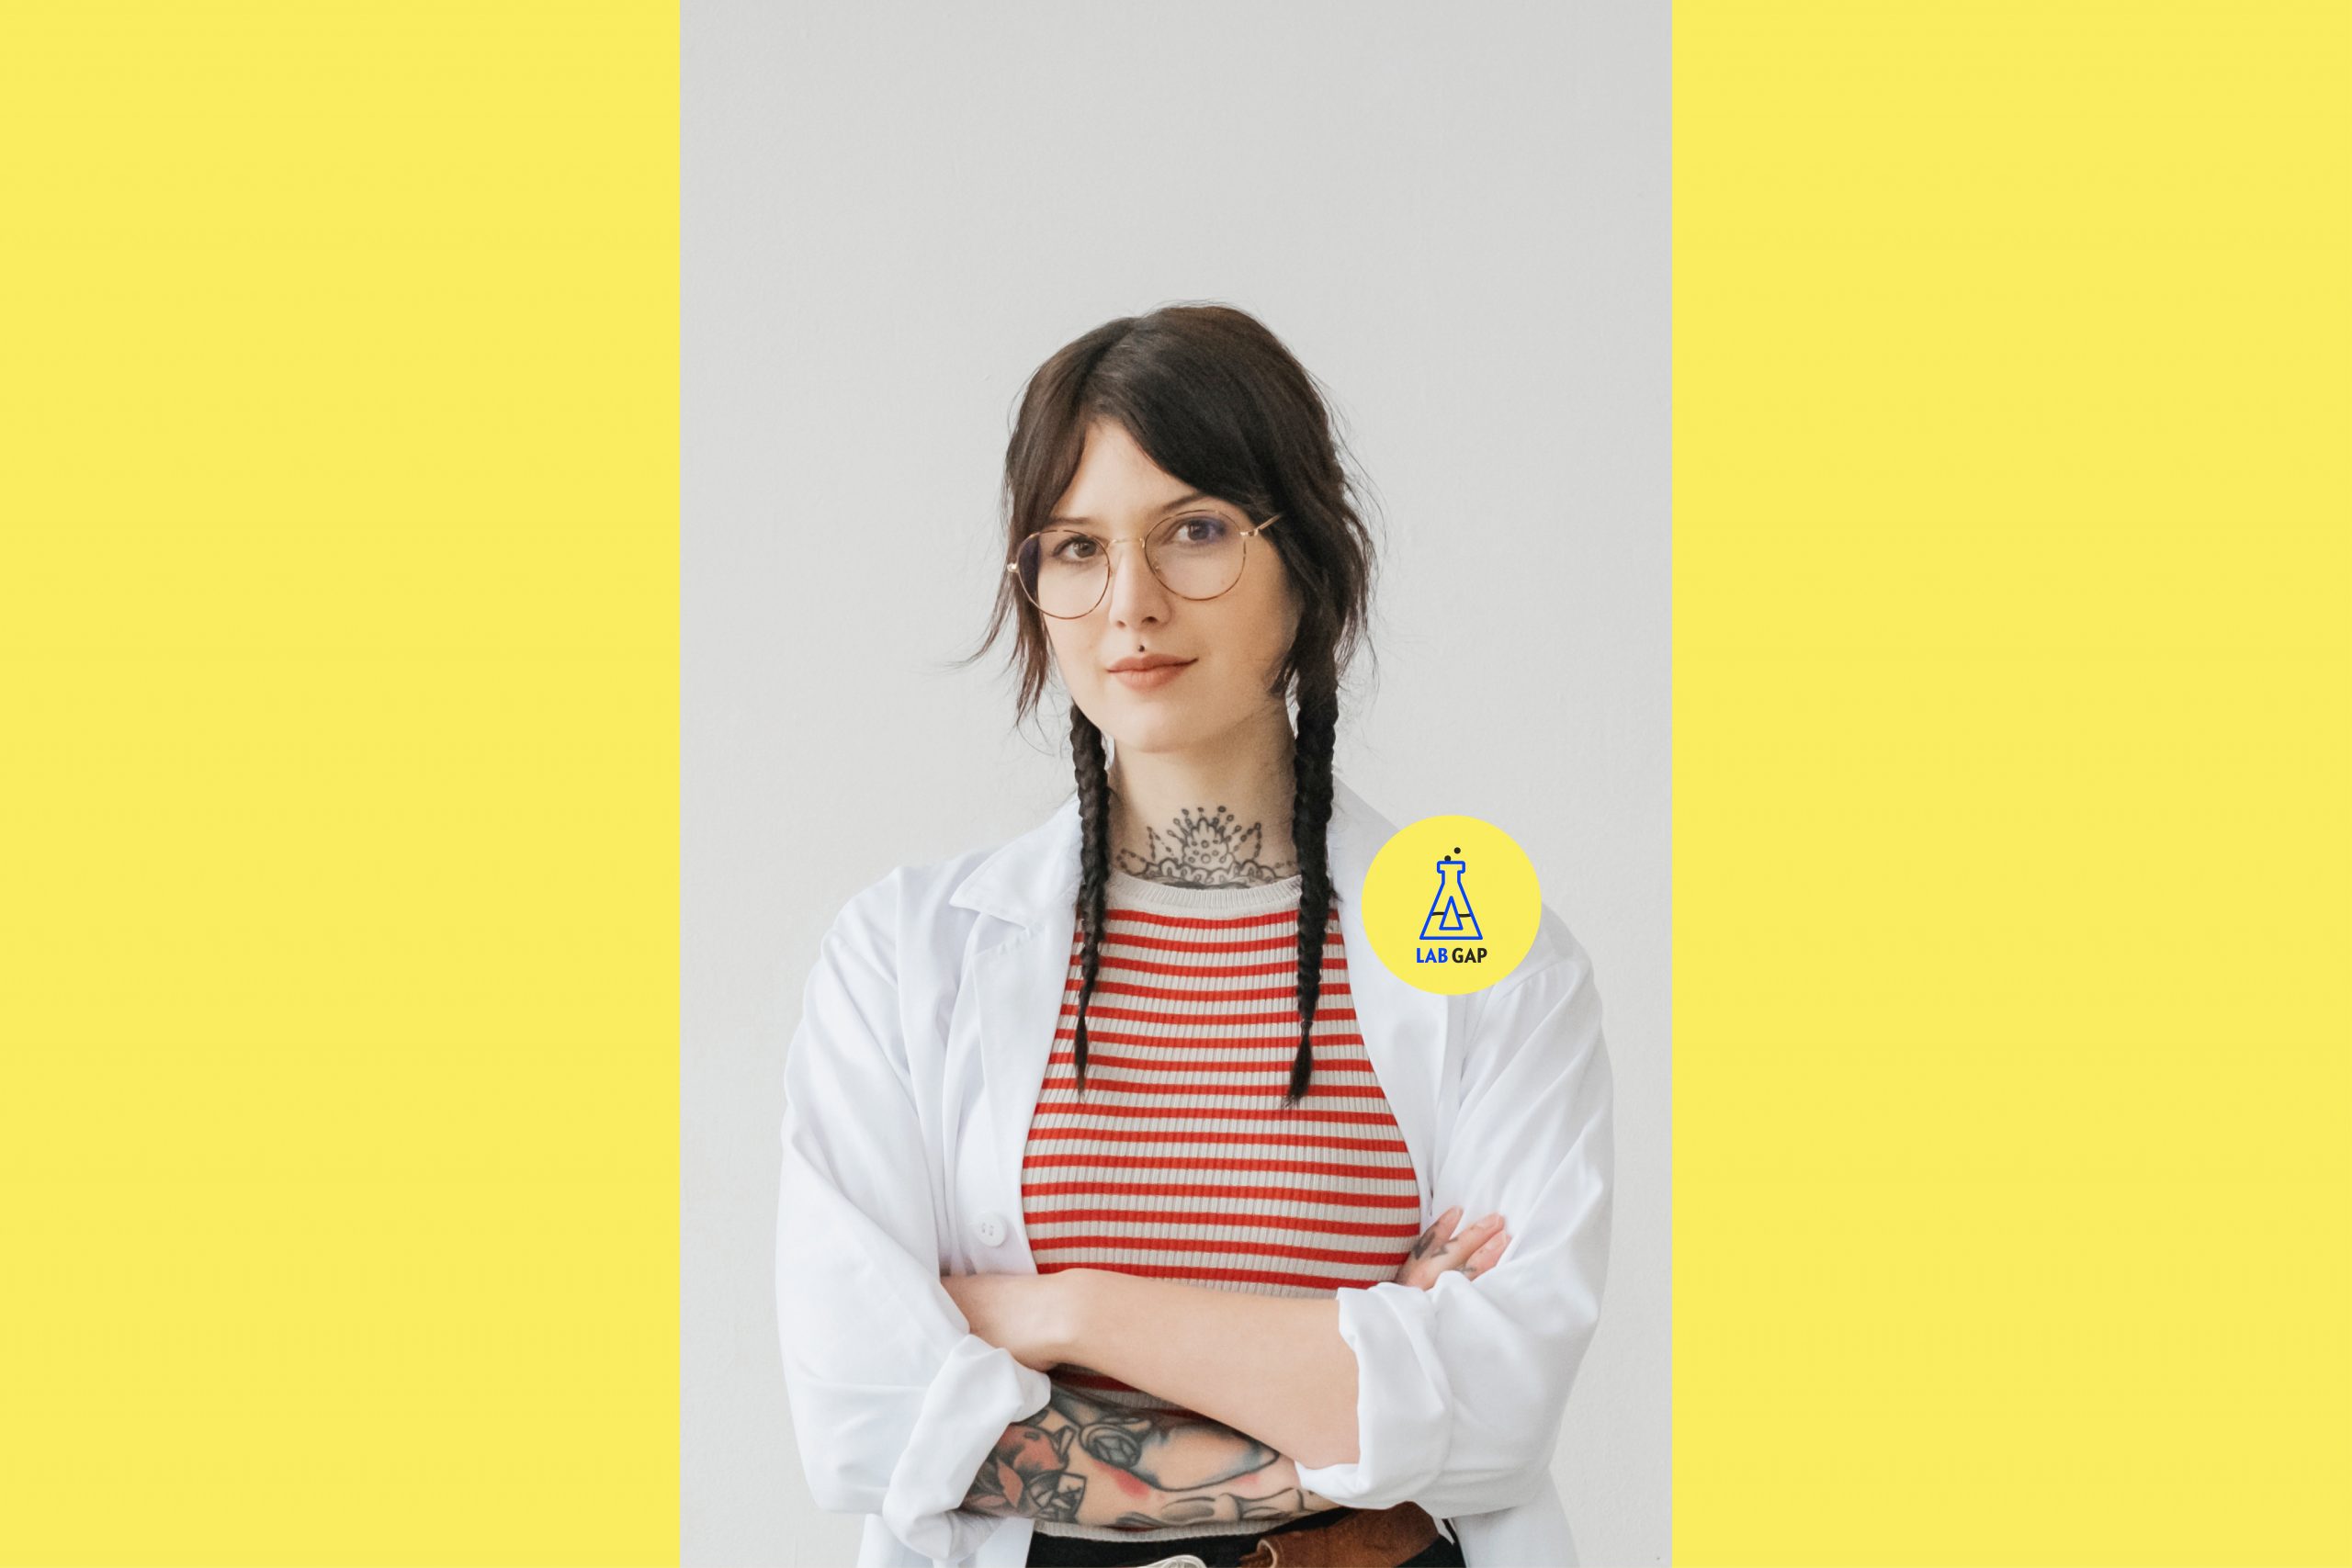 Host des Podcasts Lab Gap, Victoria Müller, trägt einen Laborkittel und blickt selbstbewusst in die Kamera.